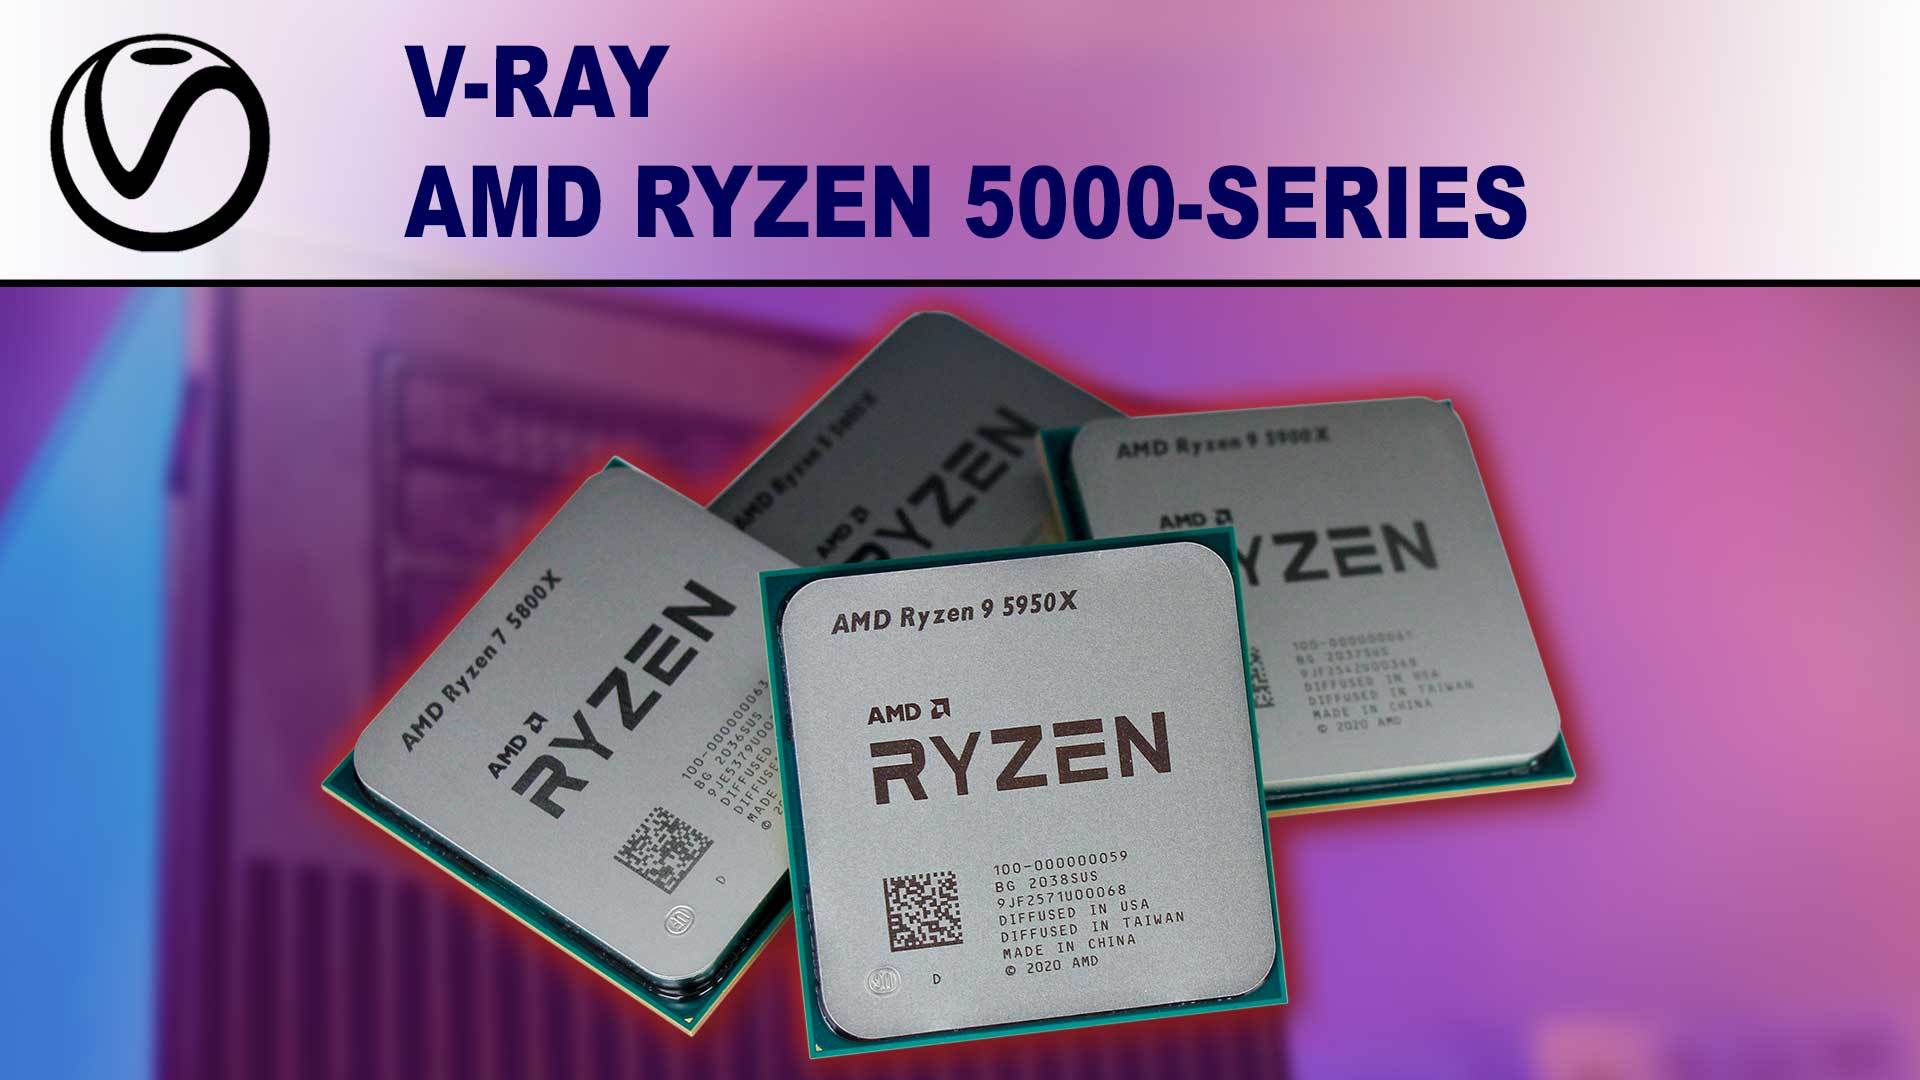 V-Ray AMD Ryzen 5000 Series